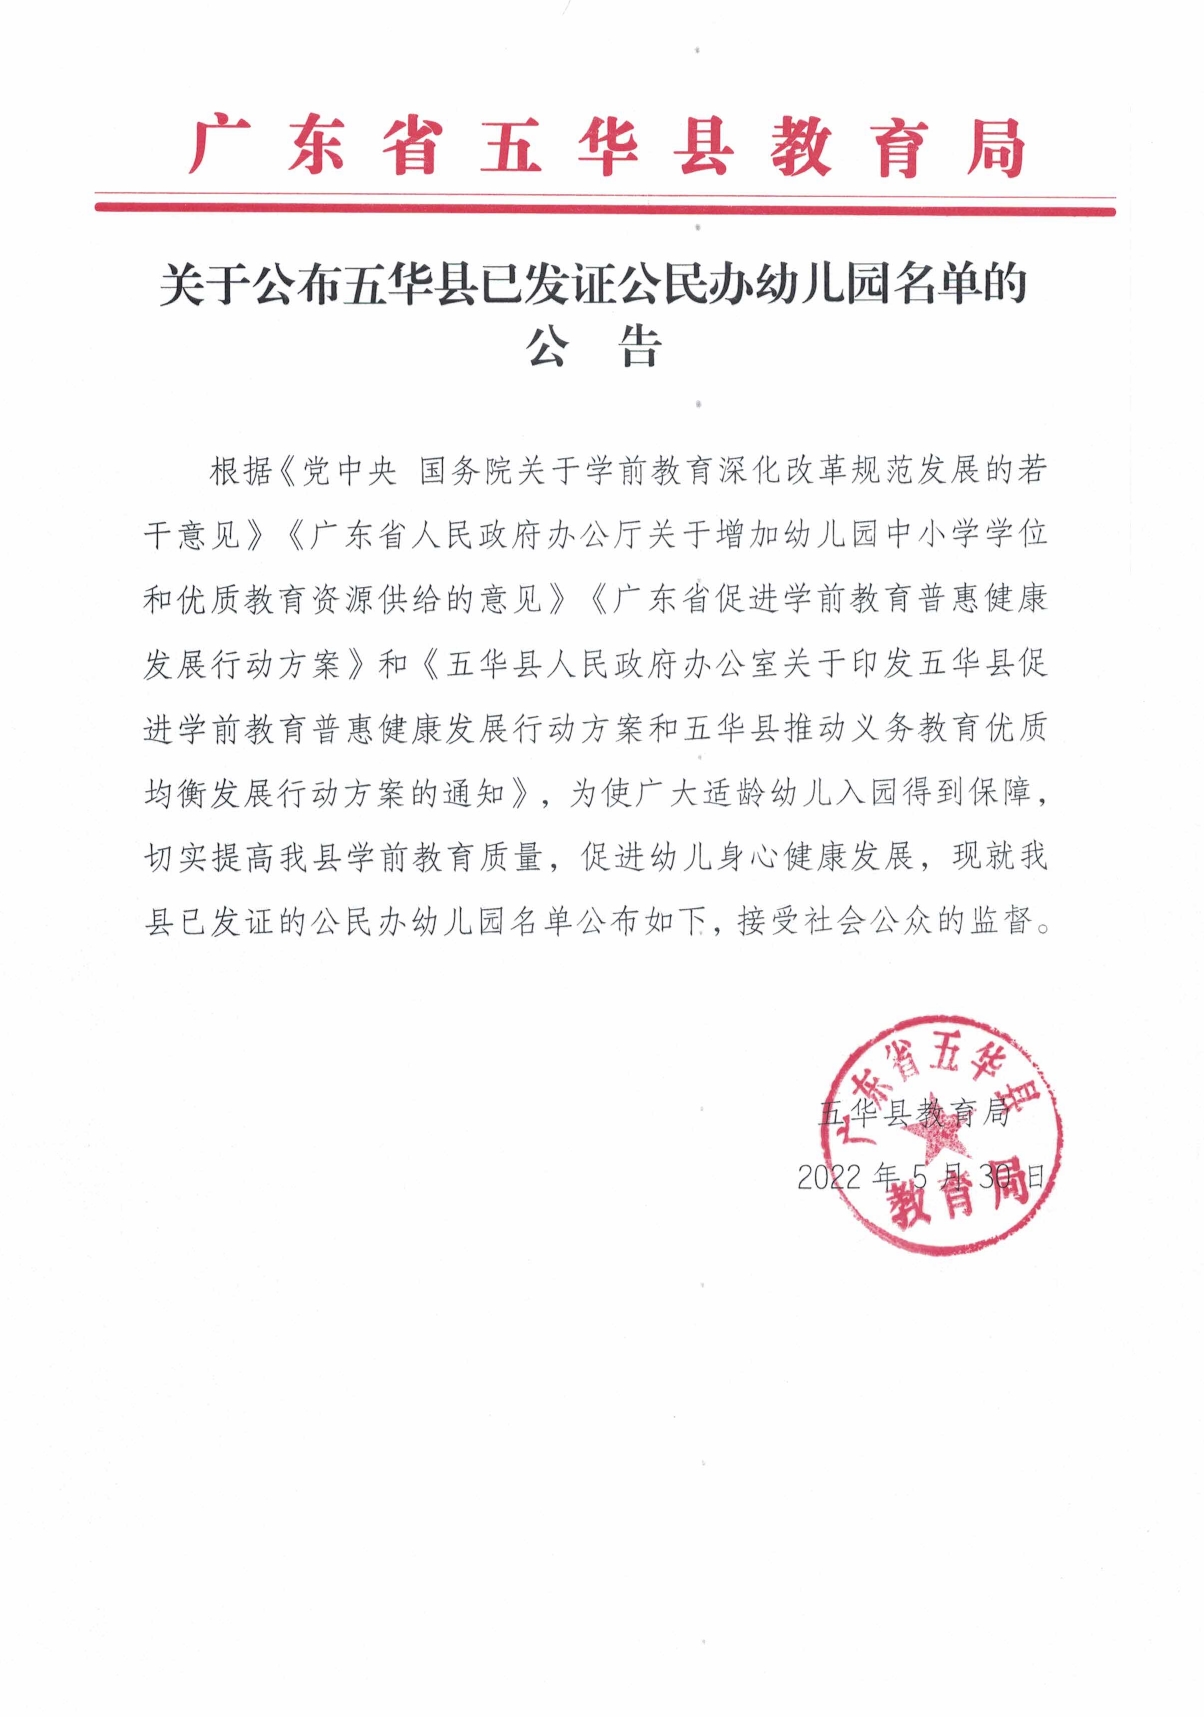 关于公布五华县已发证公民办幼儿园名单的公告0000.jpg